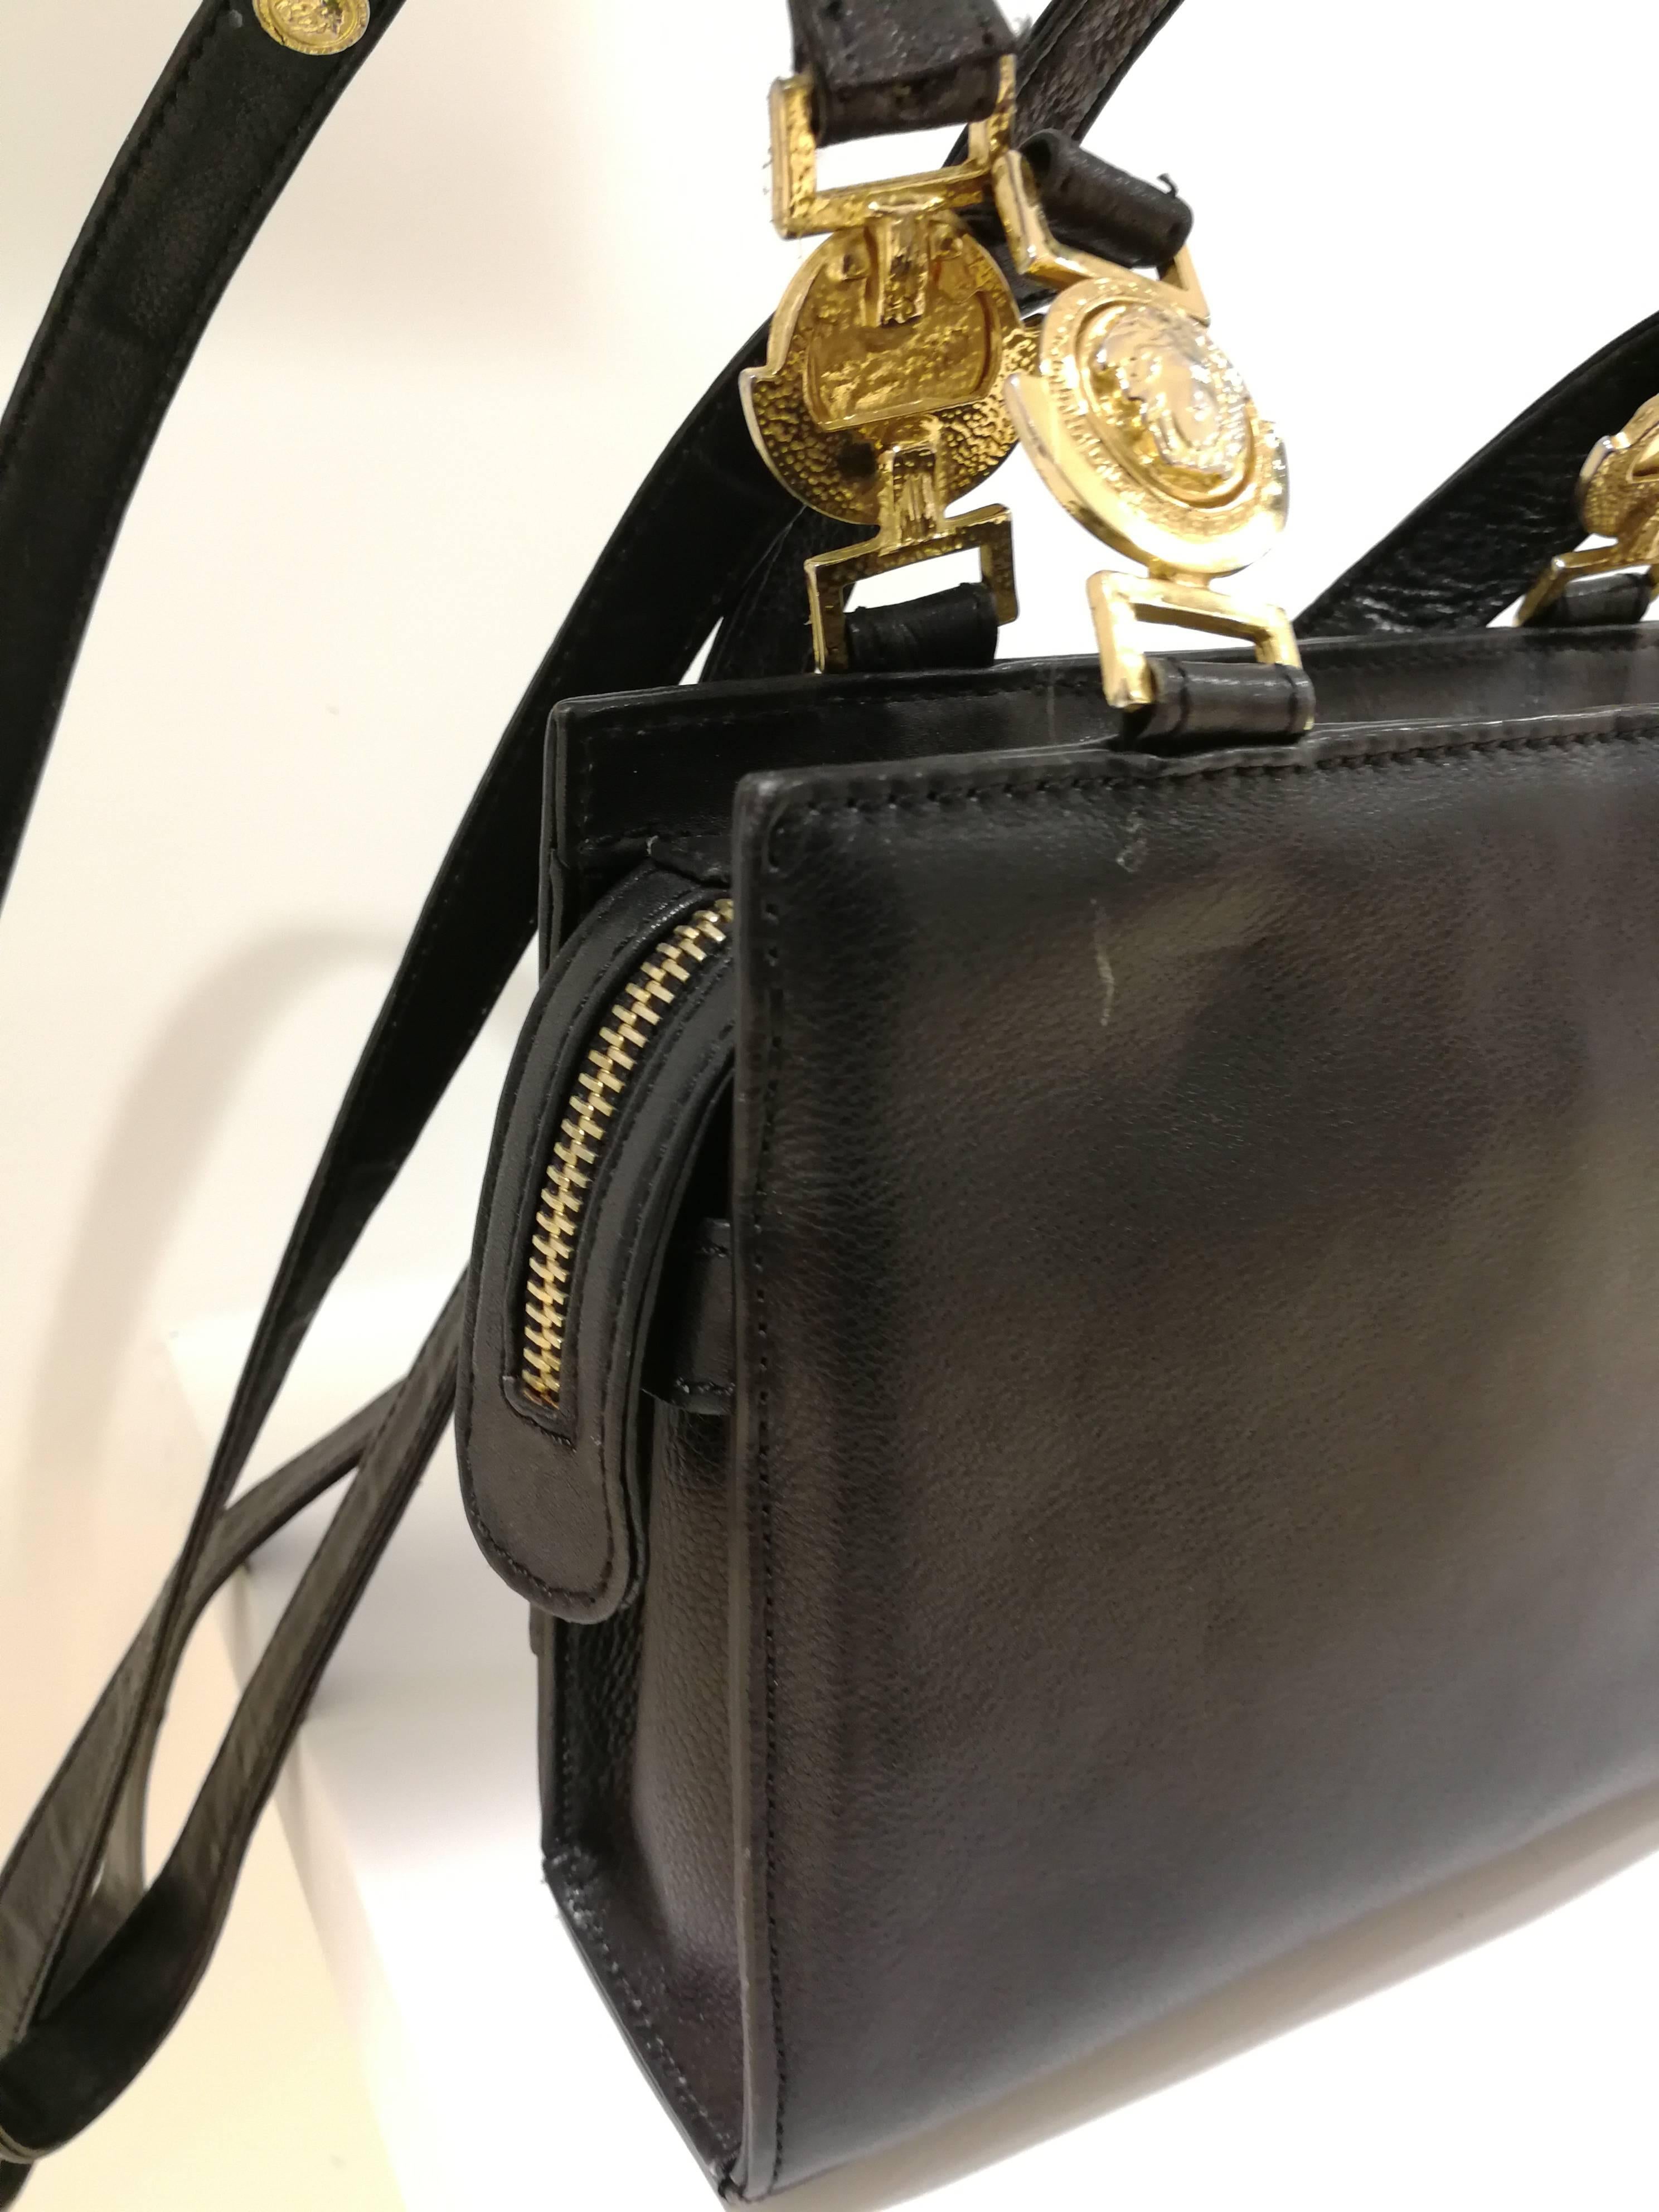 Gianni Versace black leather gold studs Shoulder Bag

Medusa logo

Measurements :14 cm * 18 cm 
depht 6 cm
